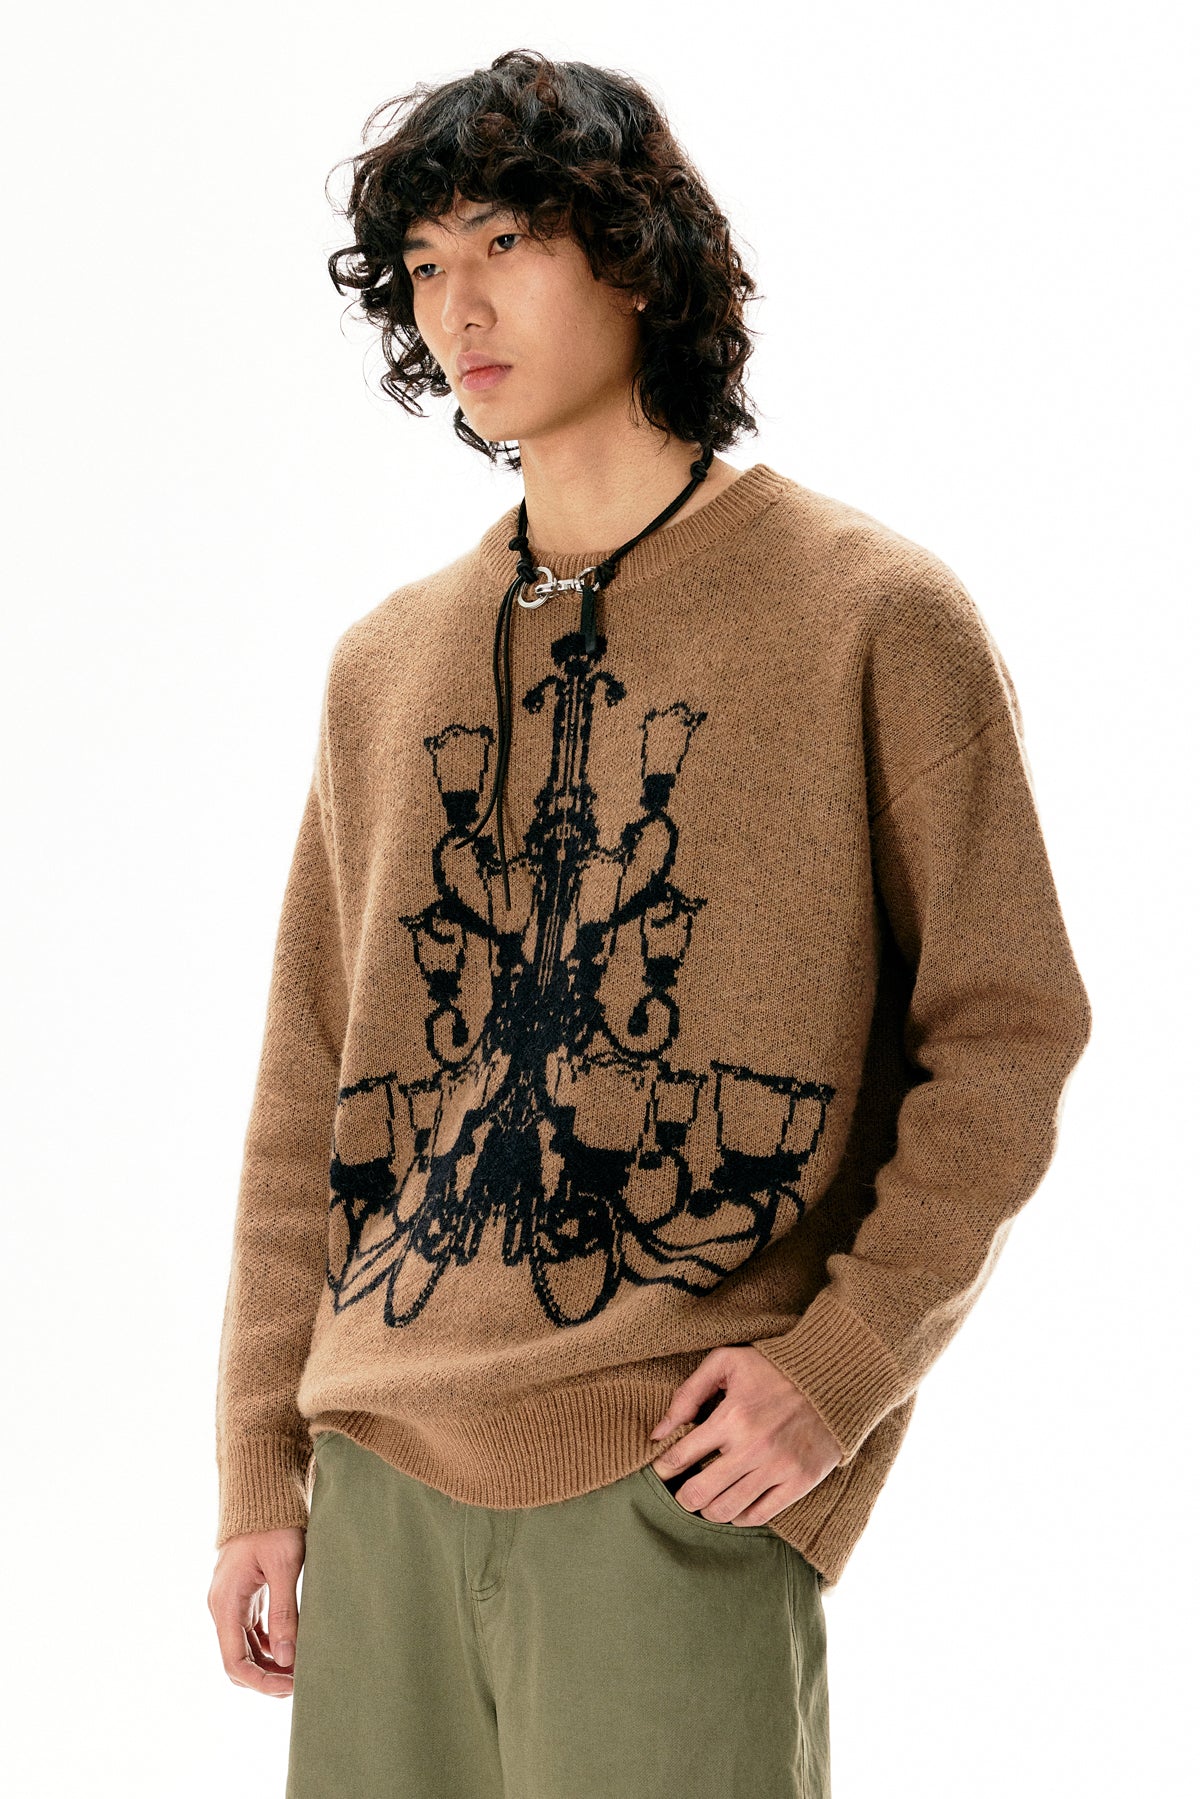 Chandelier knit sweater